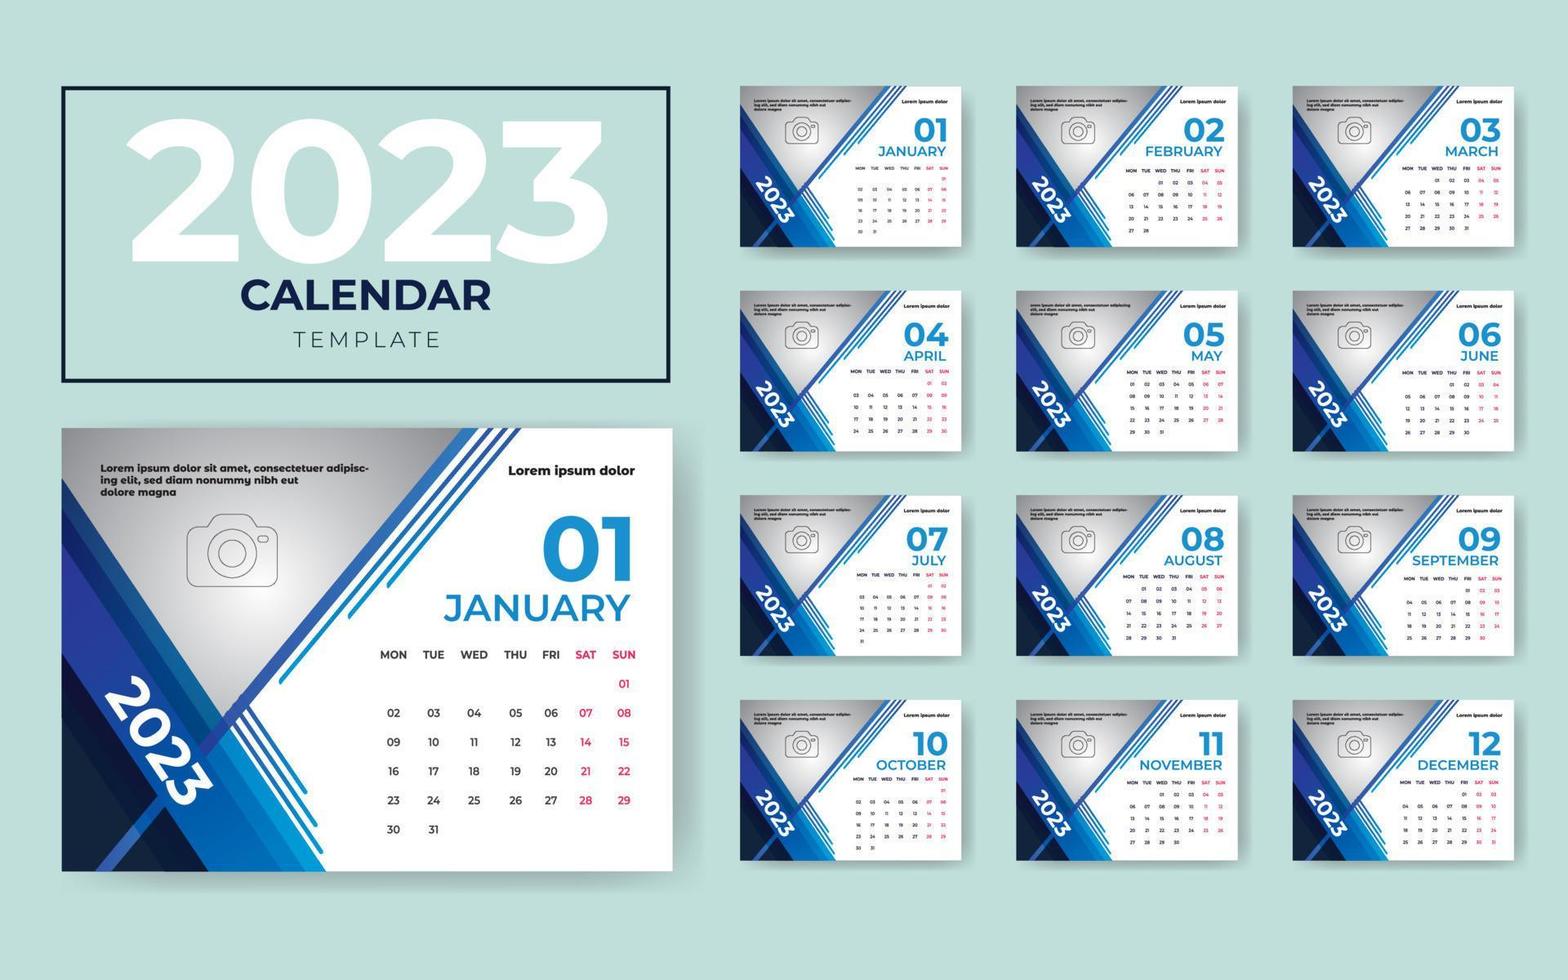 kalender design 2023, 2023 kalender mall, 12 sidor kalender design 2023, skrivbord kalender design 2023 vektor